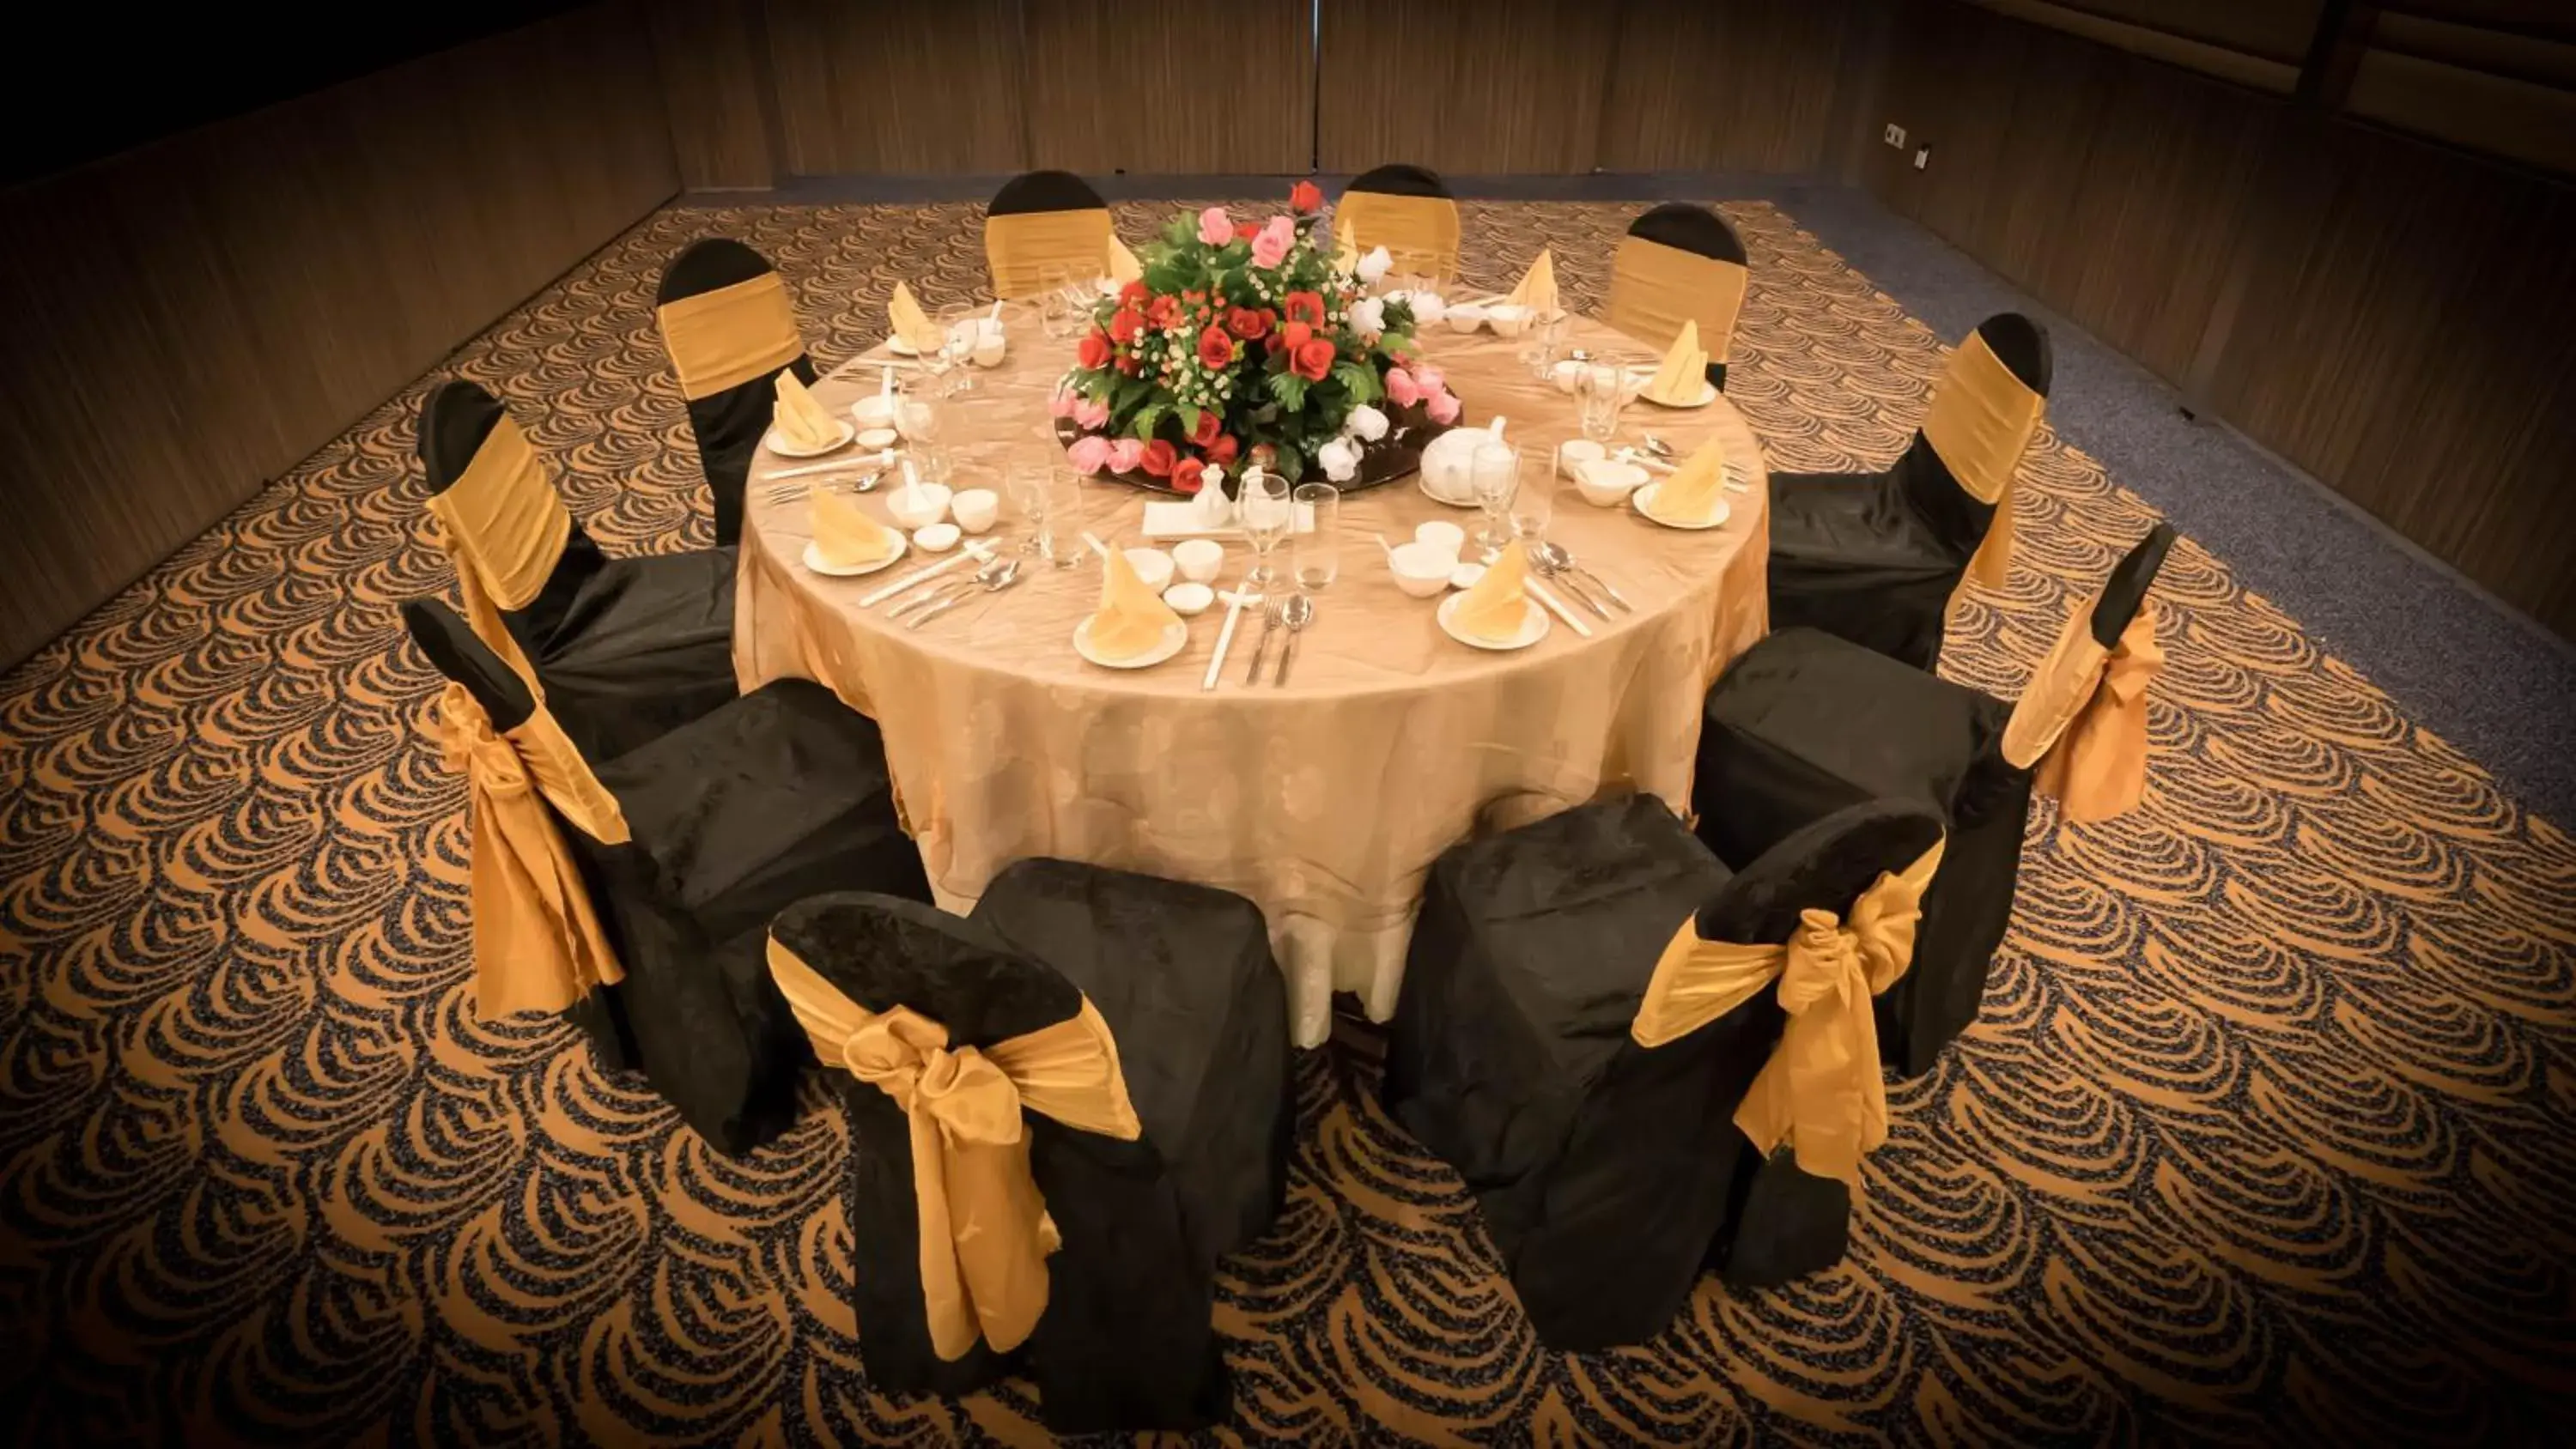 Banquet Facilities in The Klagan Regency Hotel